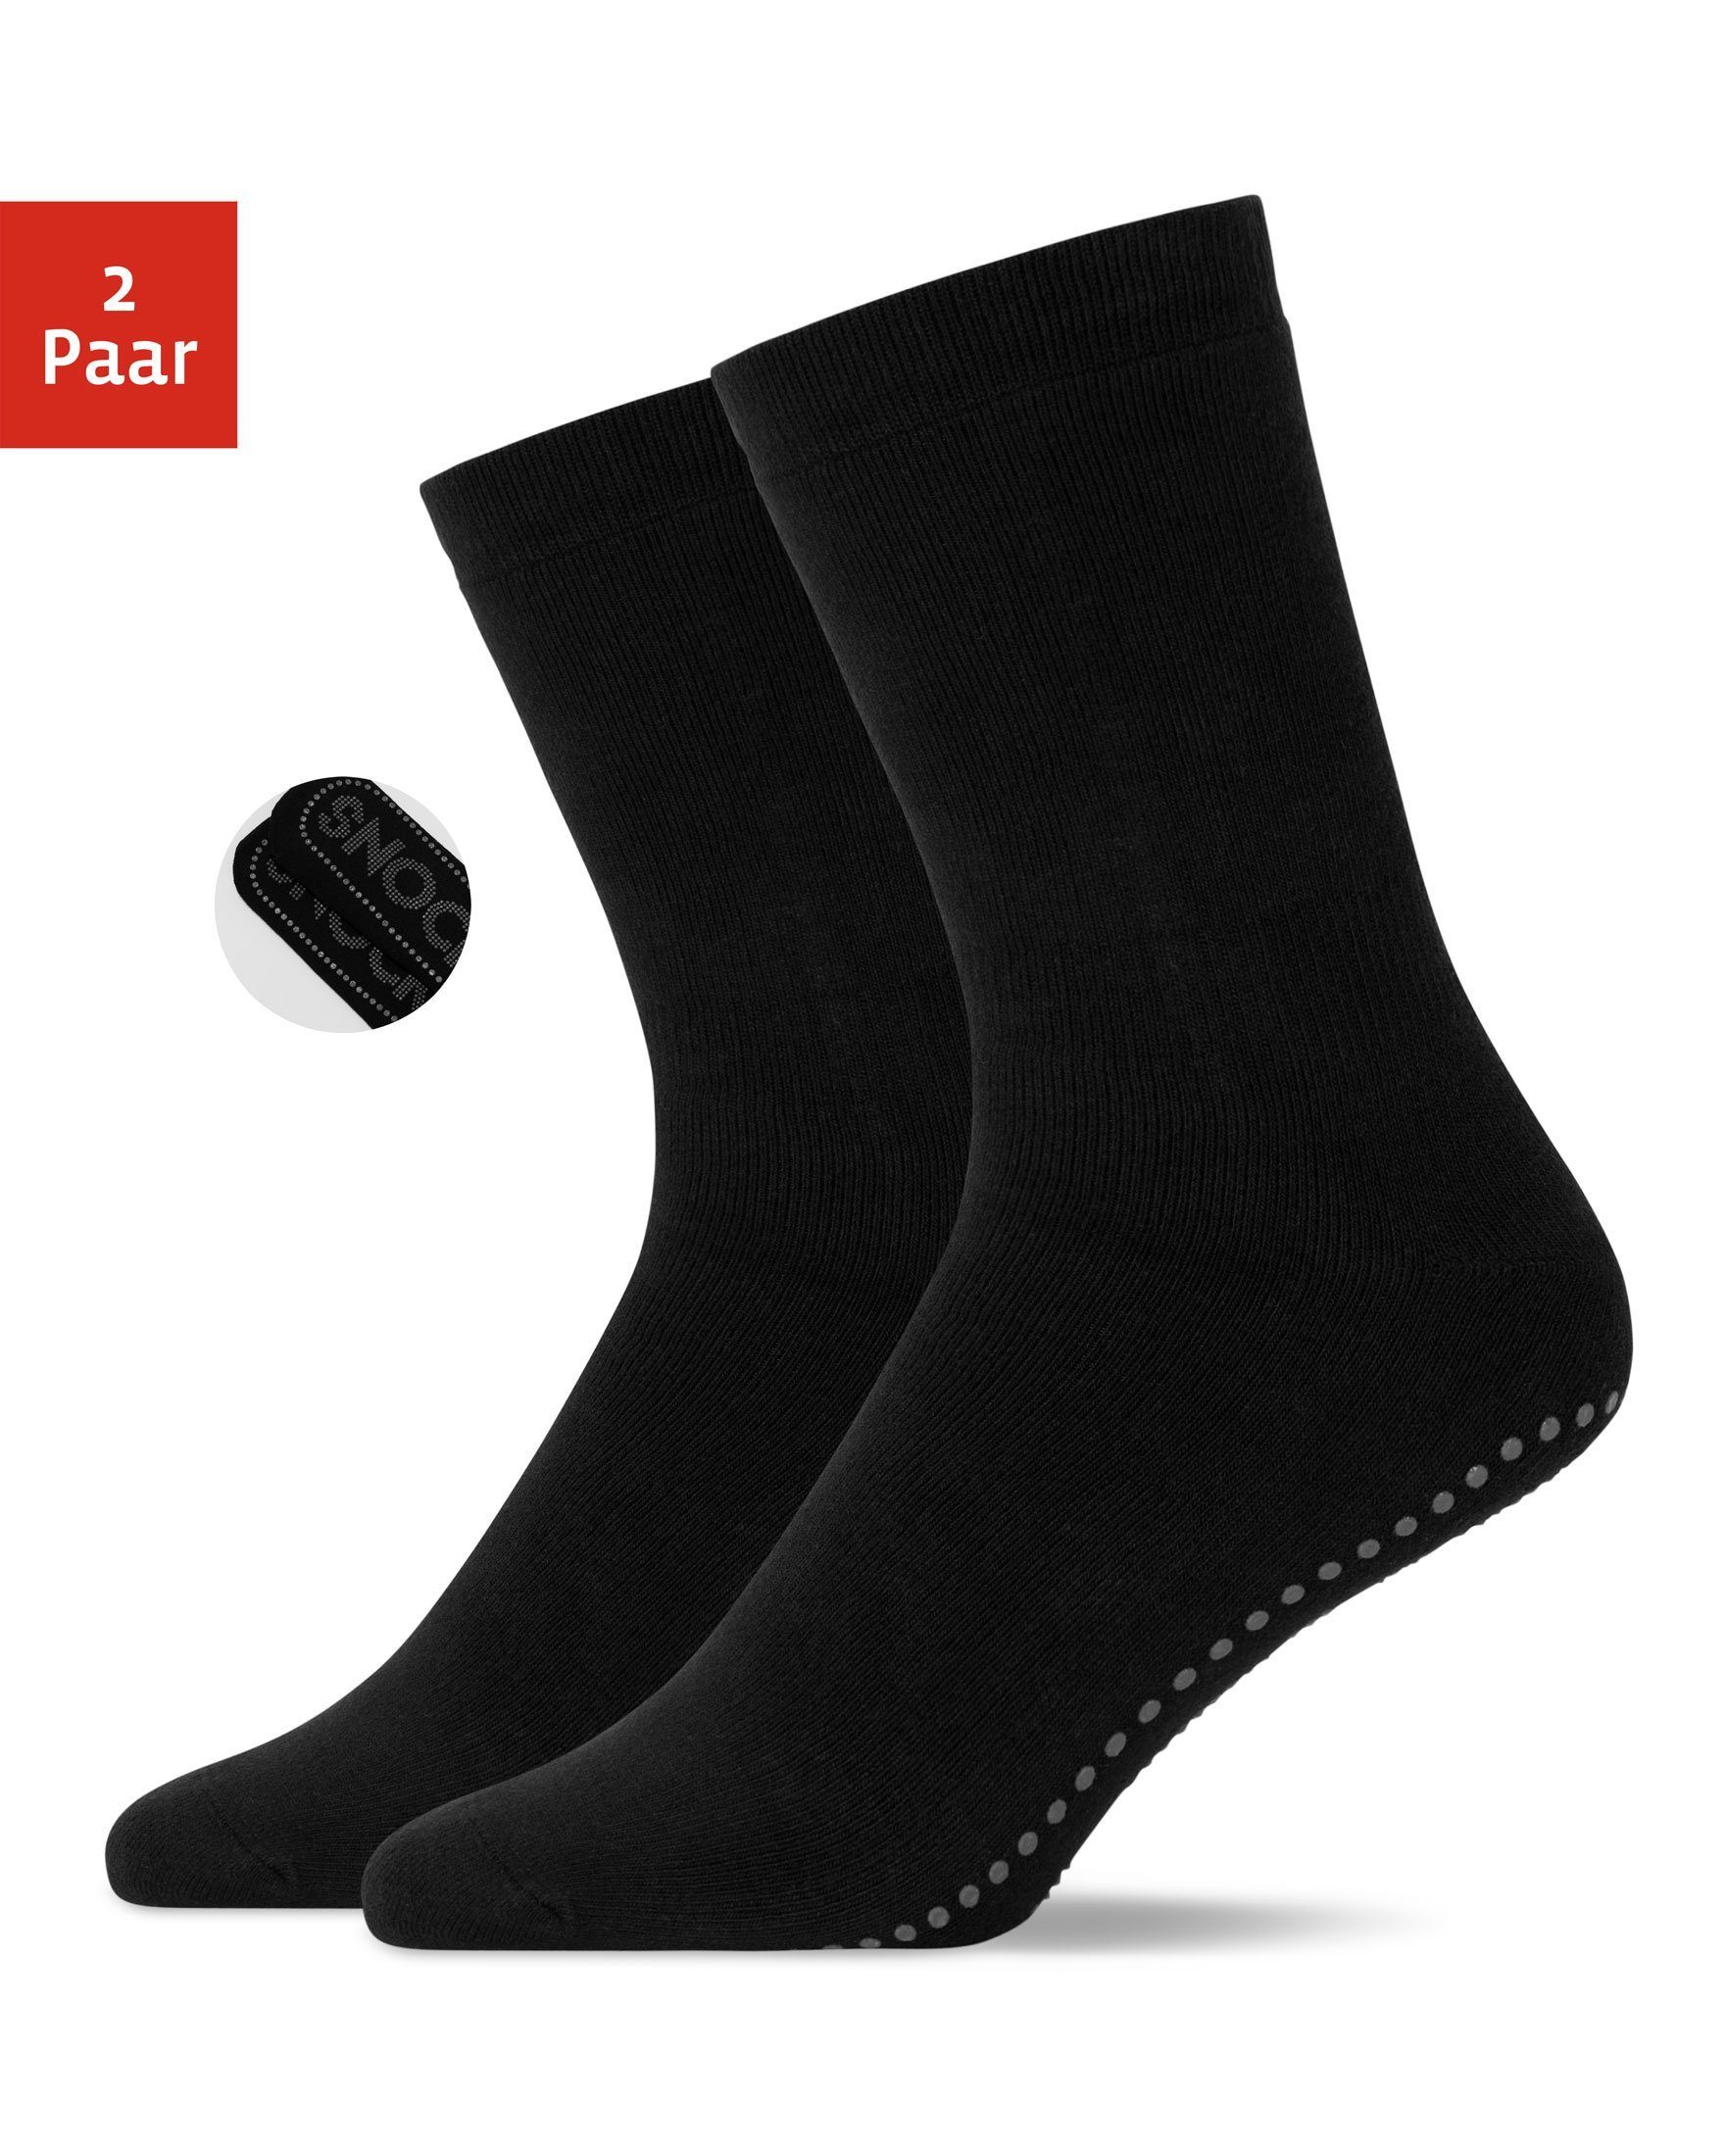 SNOCKS ABS-Socken Anti-Rutsch Socken Damen & Herren (2-Paar) aus Bio-Baumwolle, Anti-Rutsch-Noppen in süßem Design Schwarz (SNOCKS) | Stoppersocken